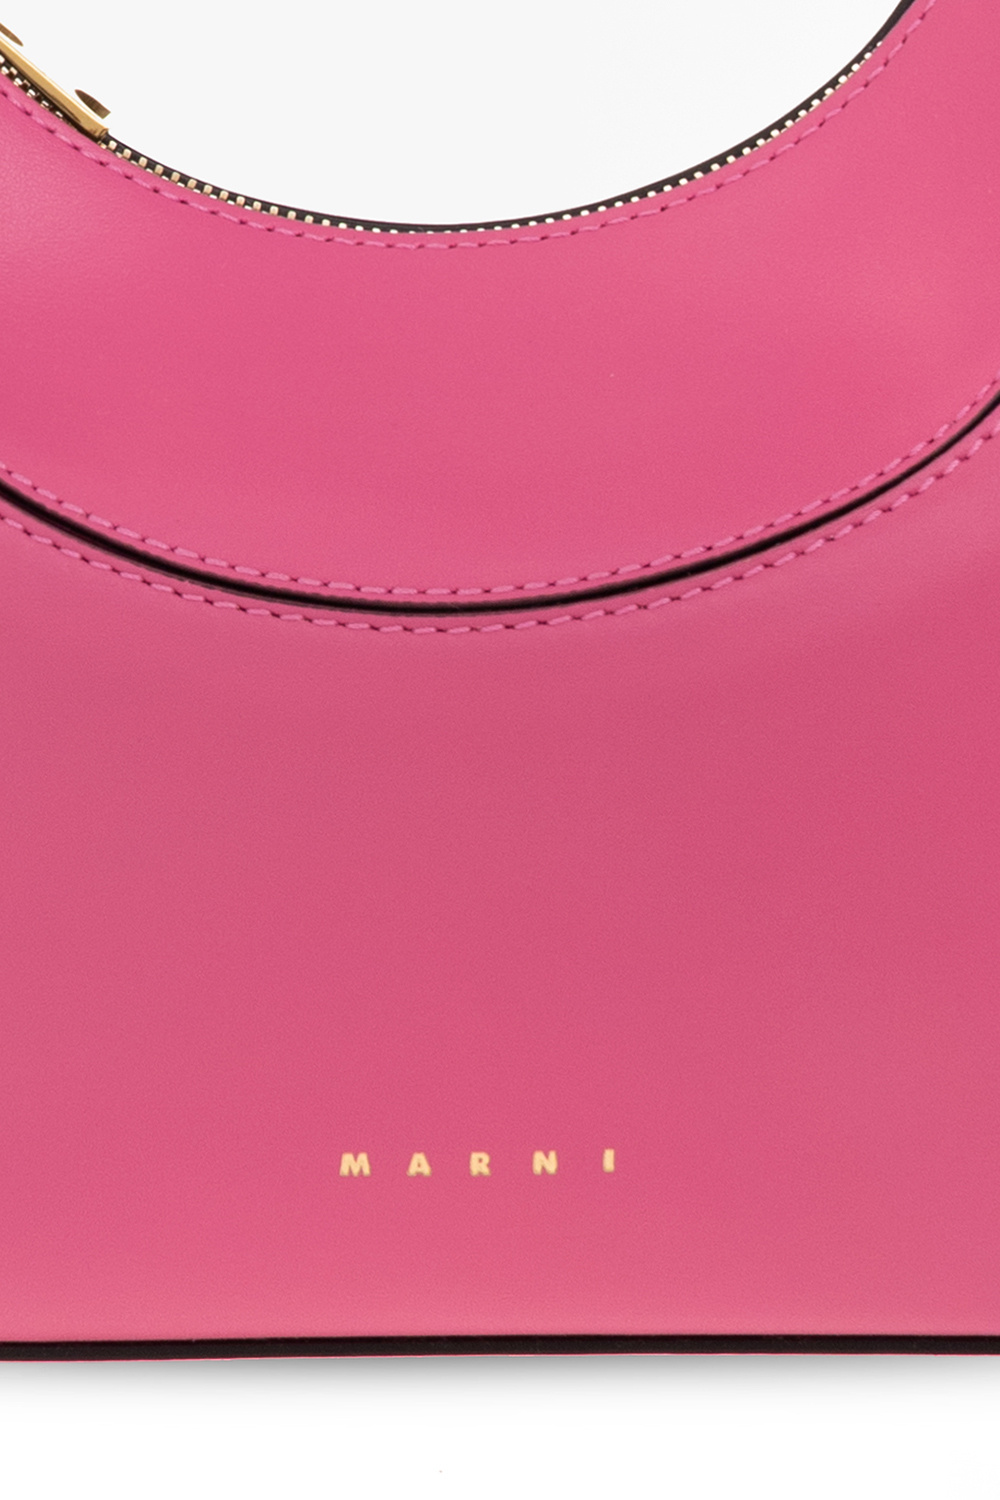 Marni ‘Milano’ hobo bag